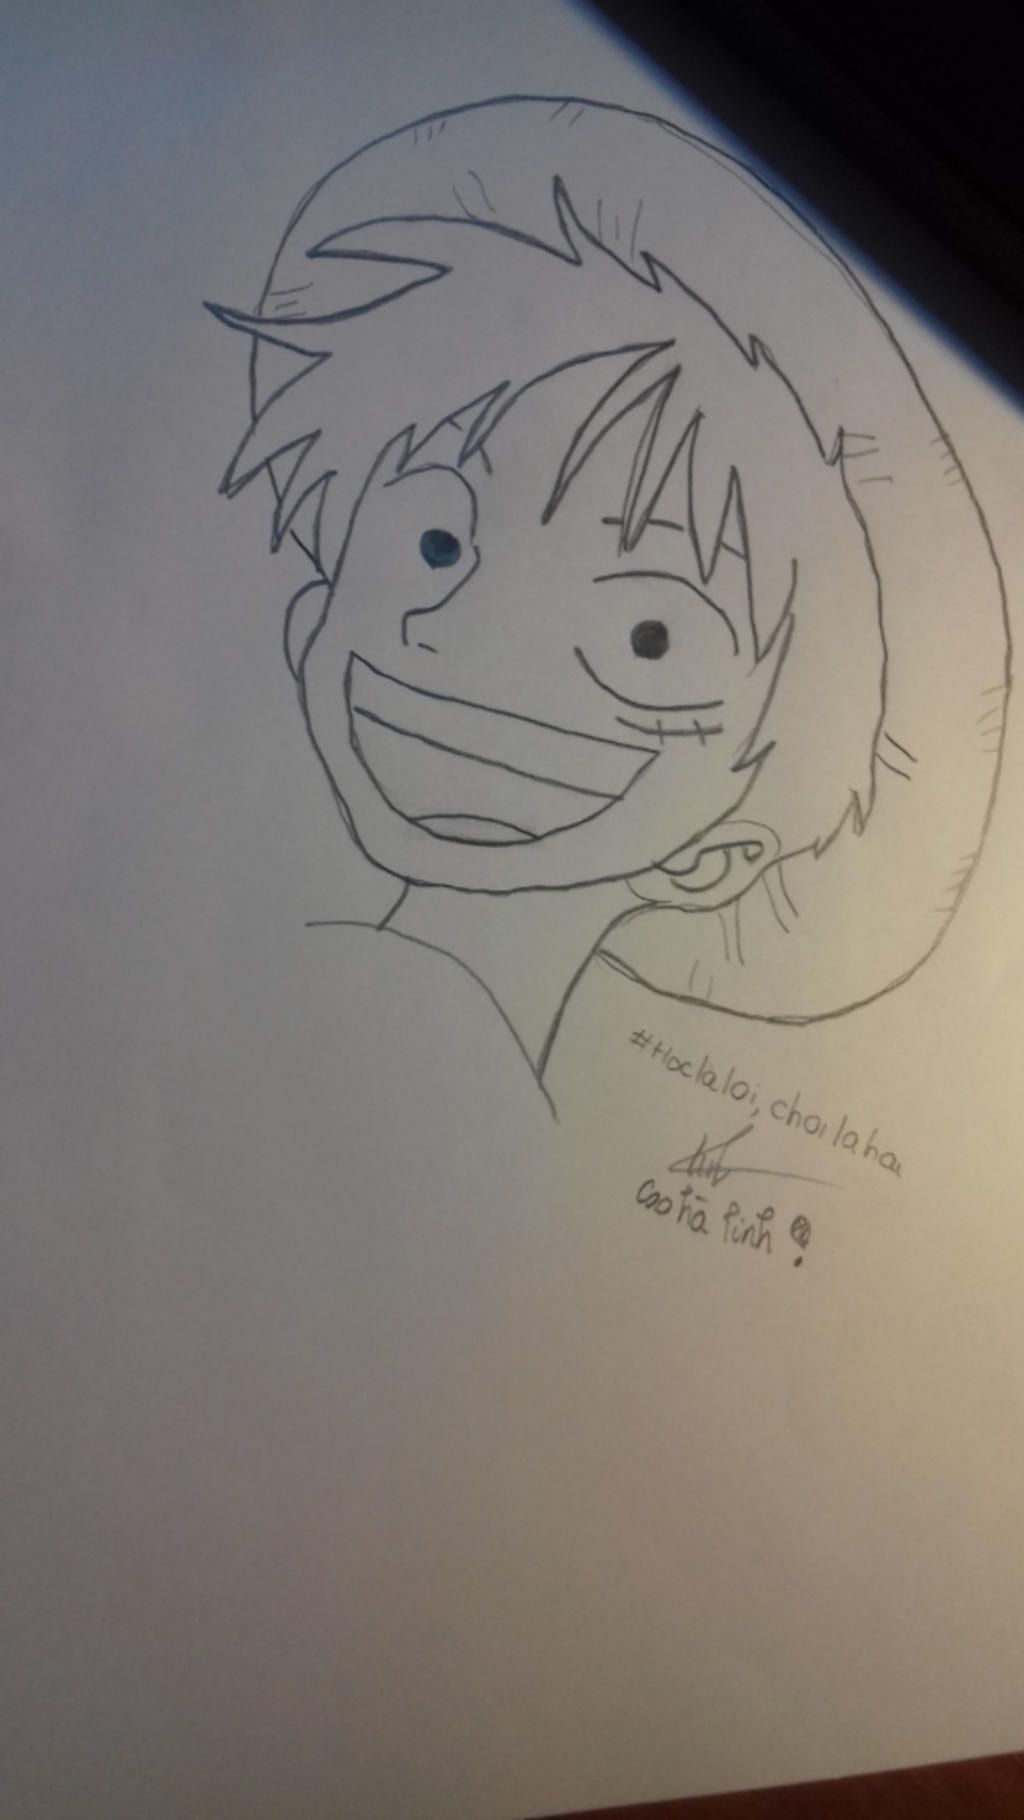 Vẽ Luffy  DRAWING MONKEY D LUFFY  One Piece  YouTube  One piece Hình  ảnh Ý tưởng vẽ